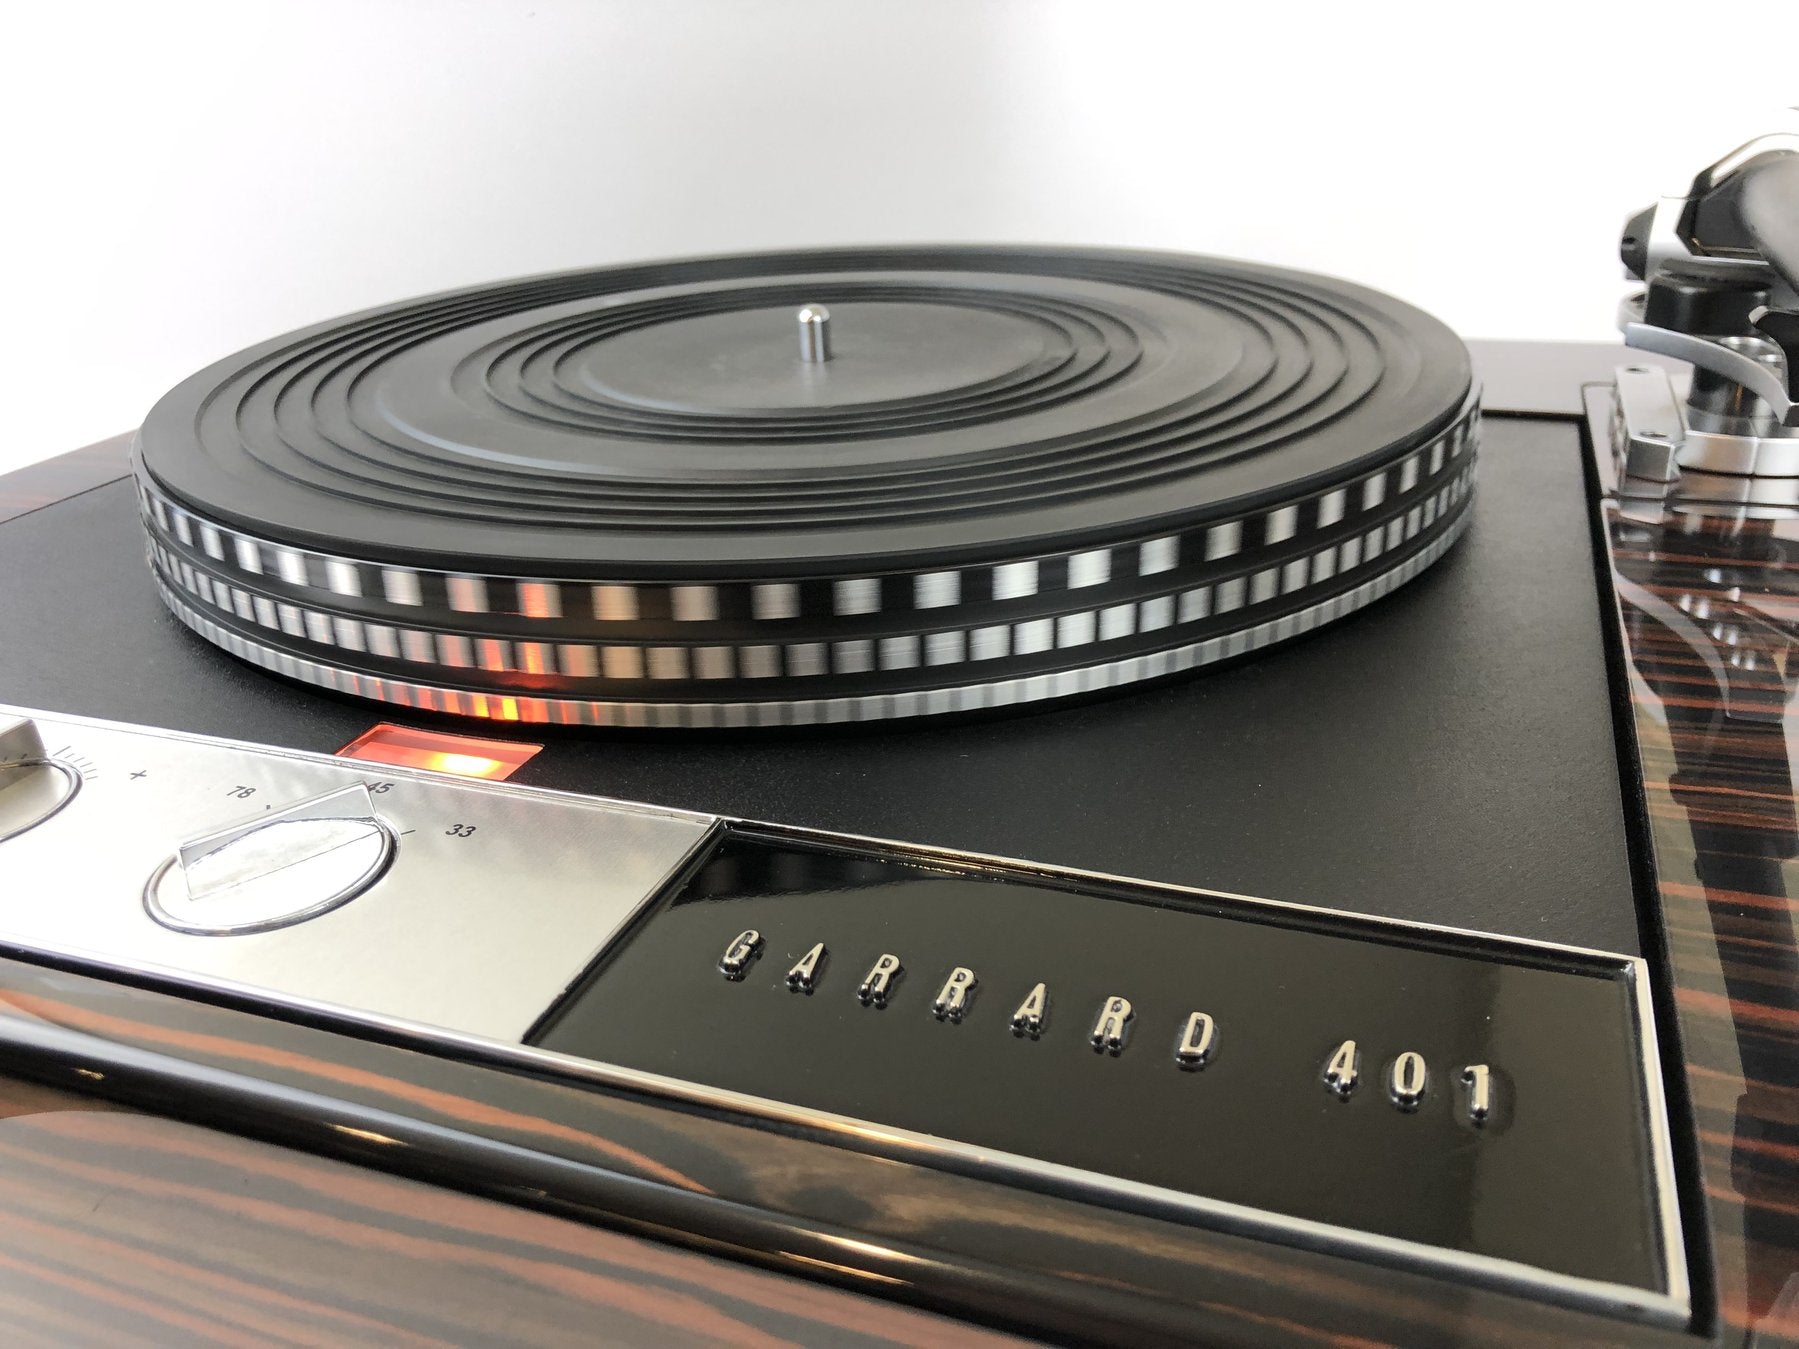 "Audio Time Machine: The Garrard 401 Spins Again"